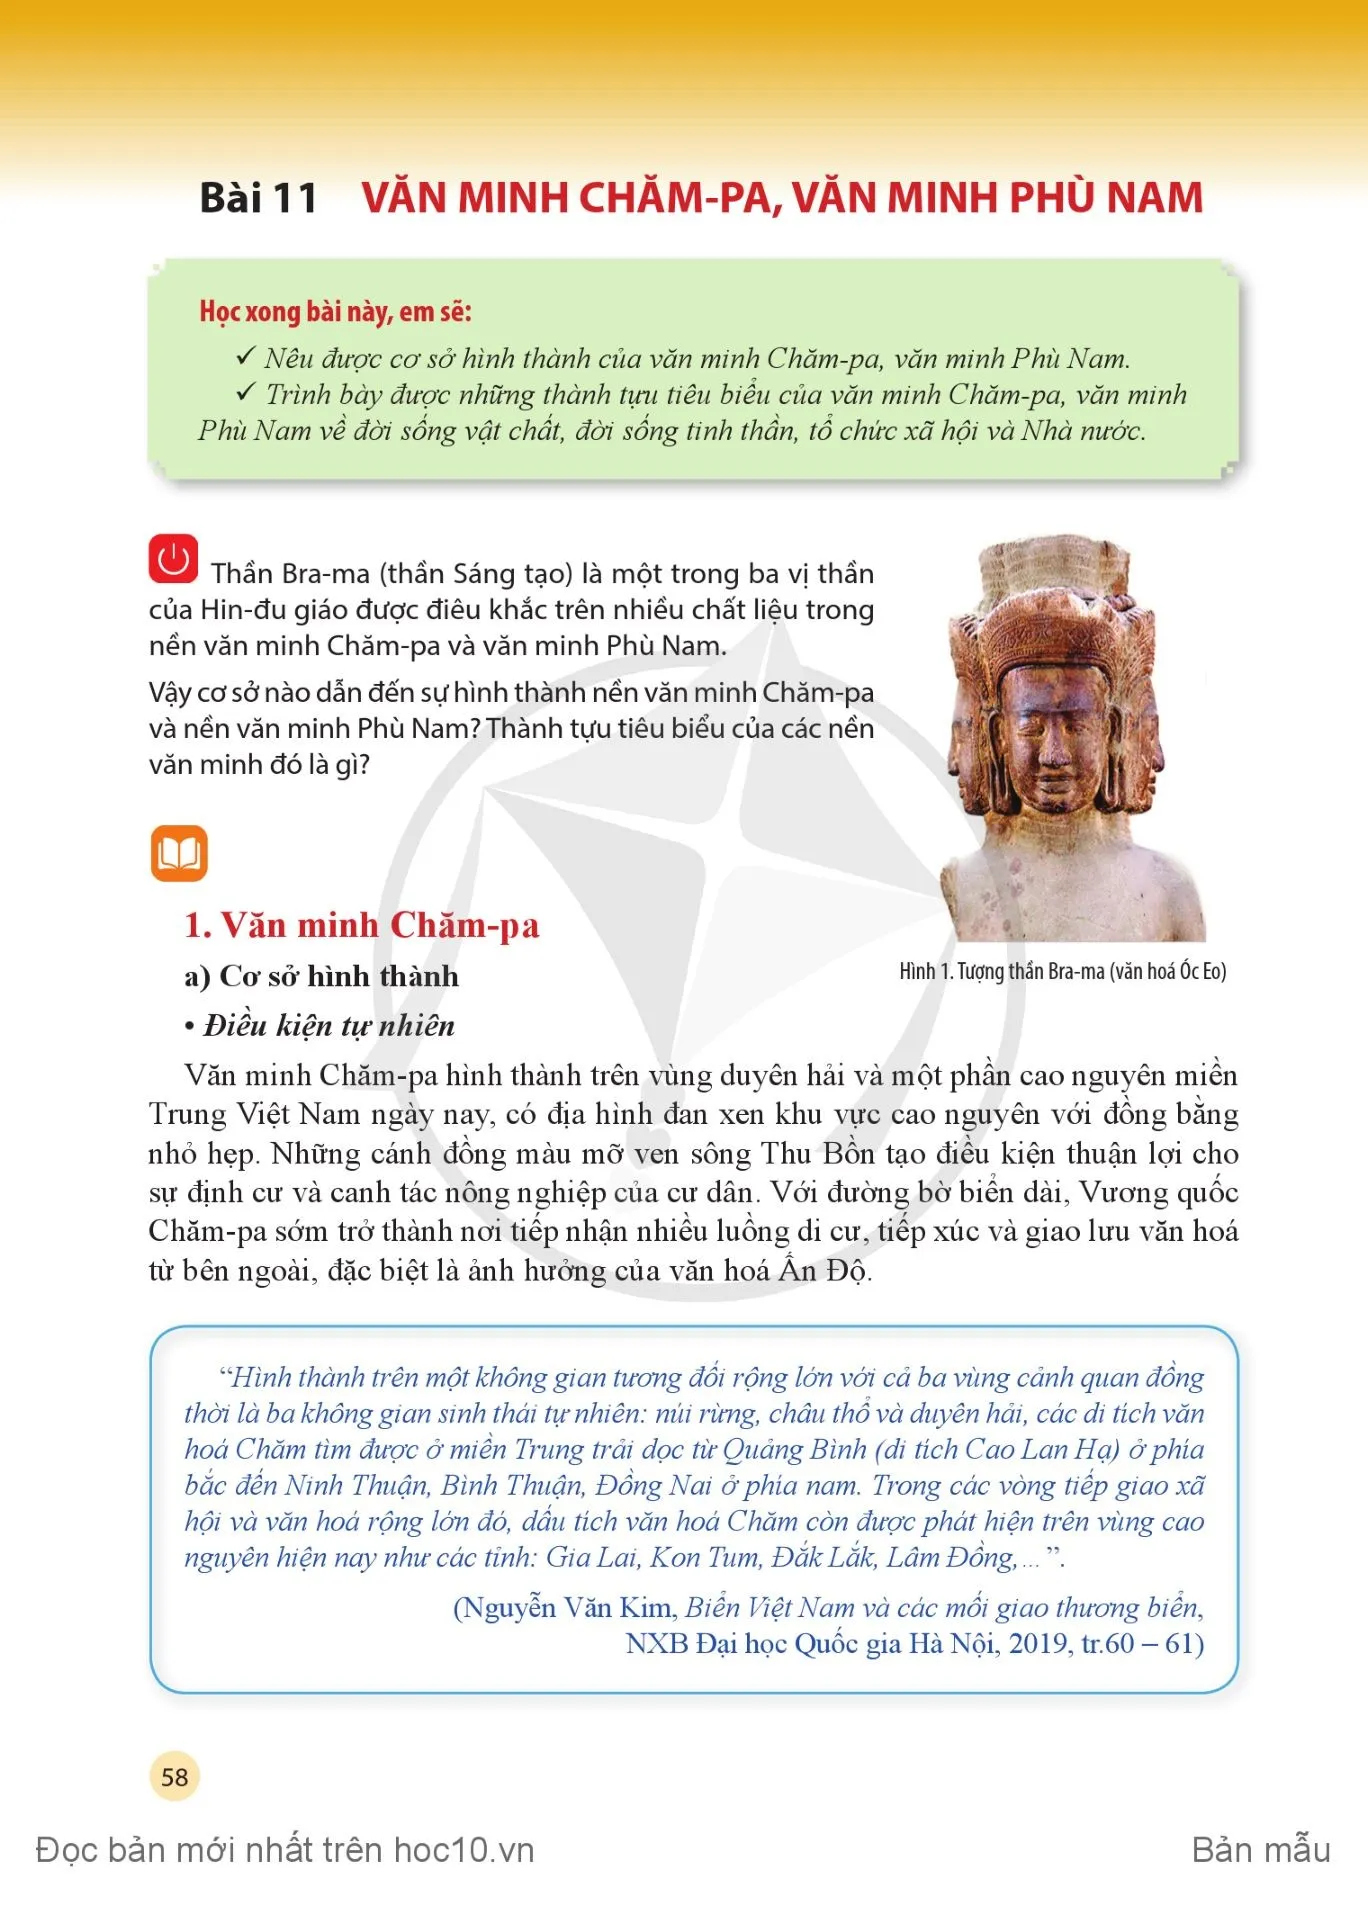 Bài 10: Văn minh Văn Lang –  u Lạc